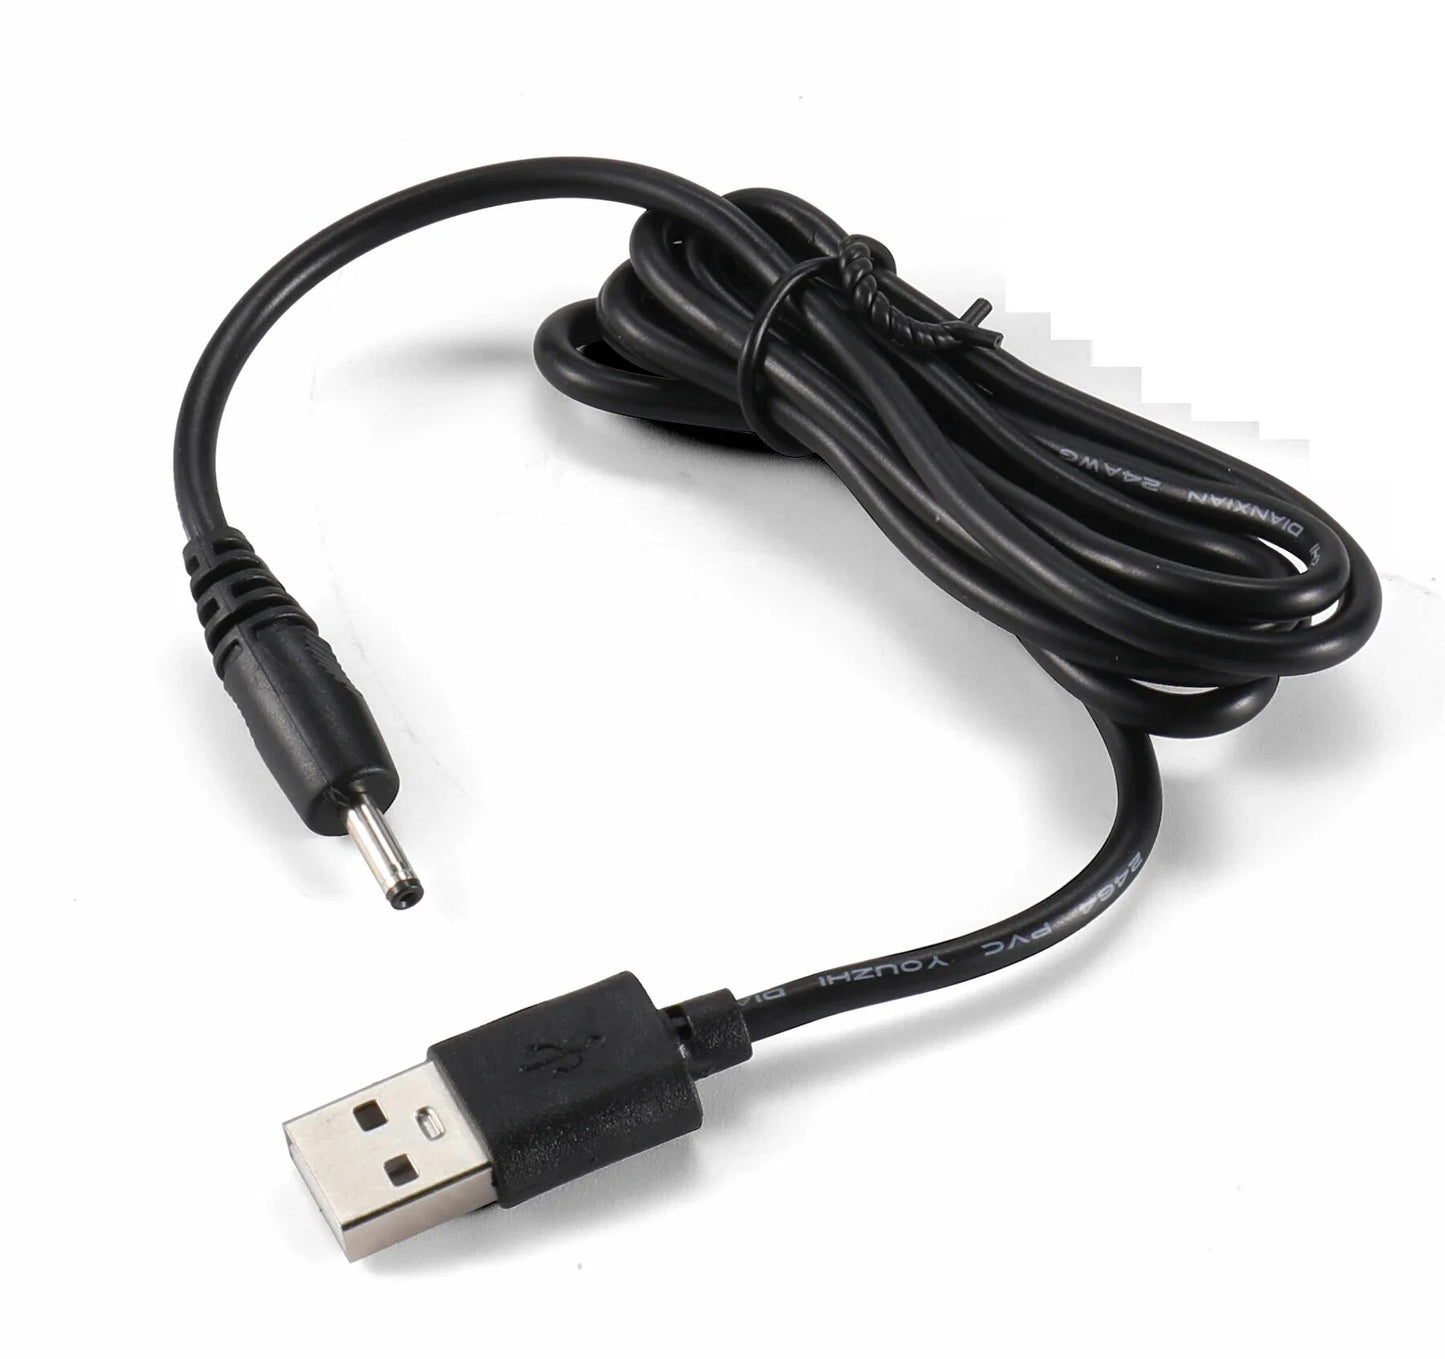 Iridium 9575 9555 cabo USB de carregamento para PC Cabo de alimentação USB cabo de carregamento para Iridium 9575 Extreme 9505A 9555 telefone via satélite 